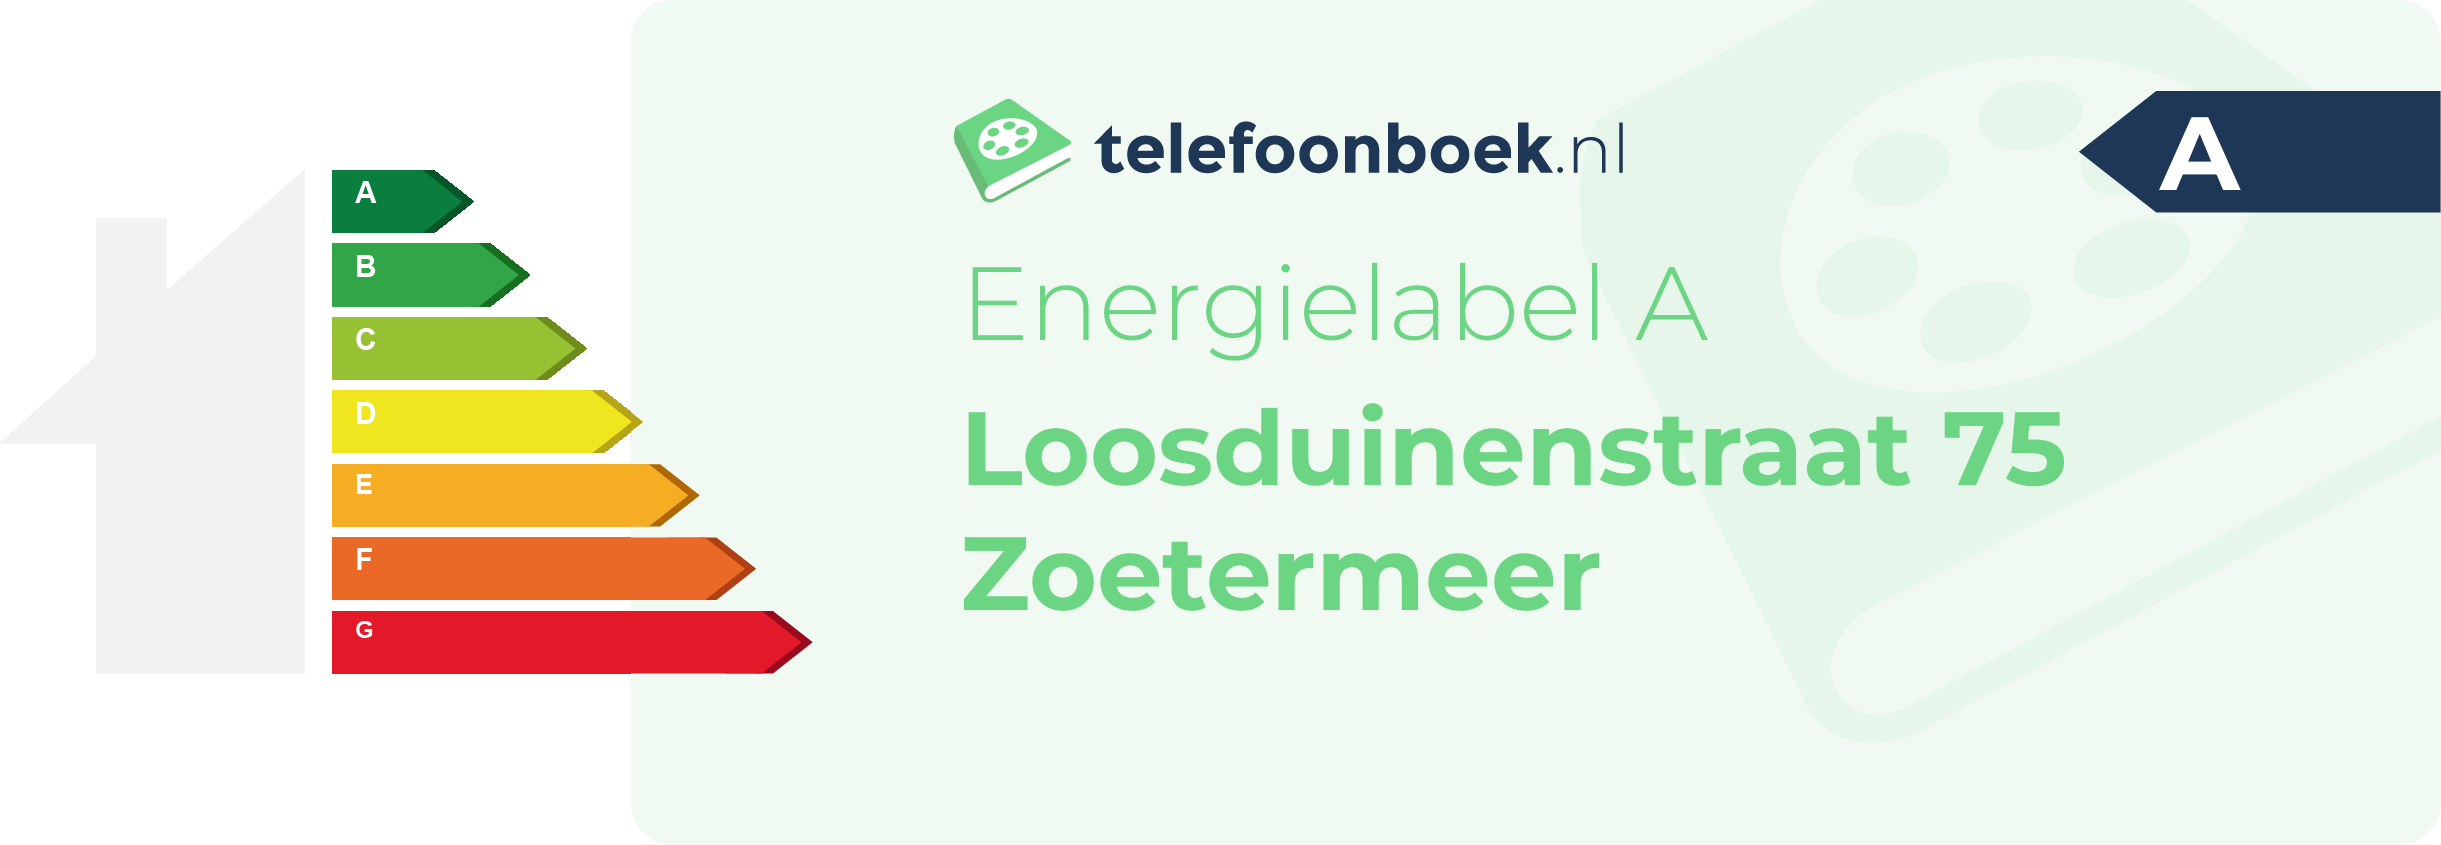 Energielabel Loosduinenstraat 75 Zoetermeer